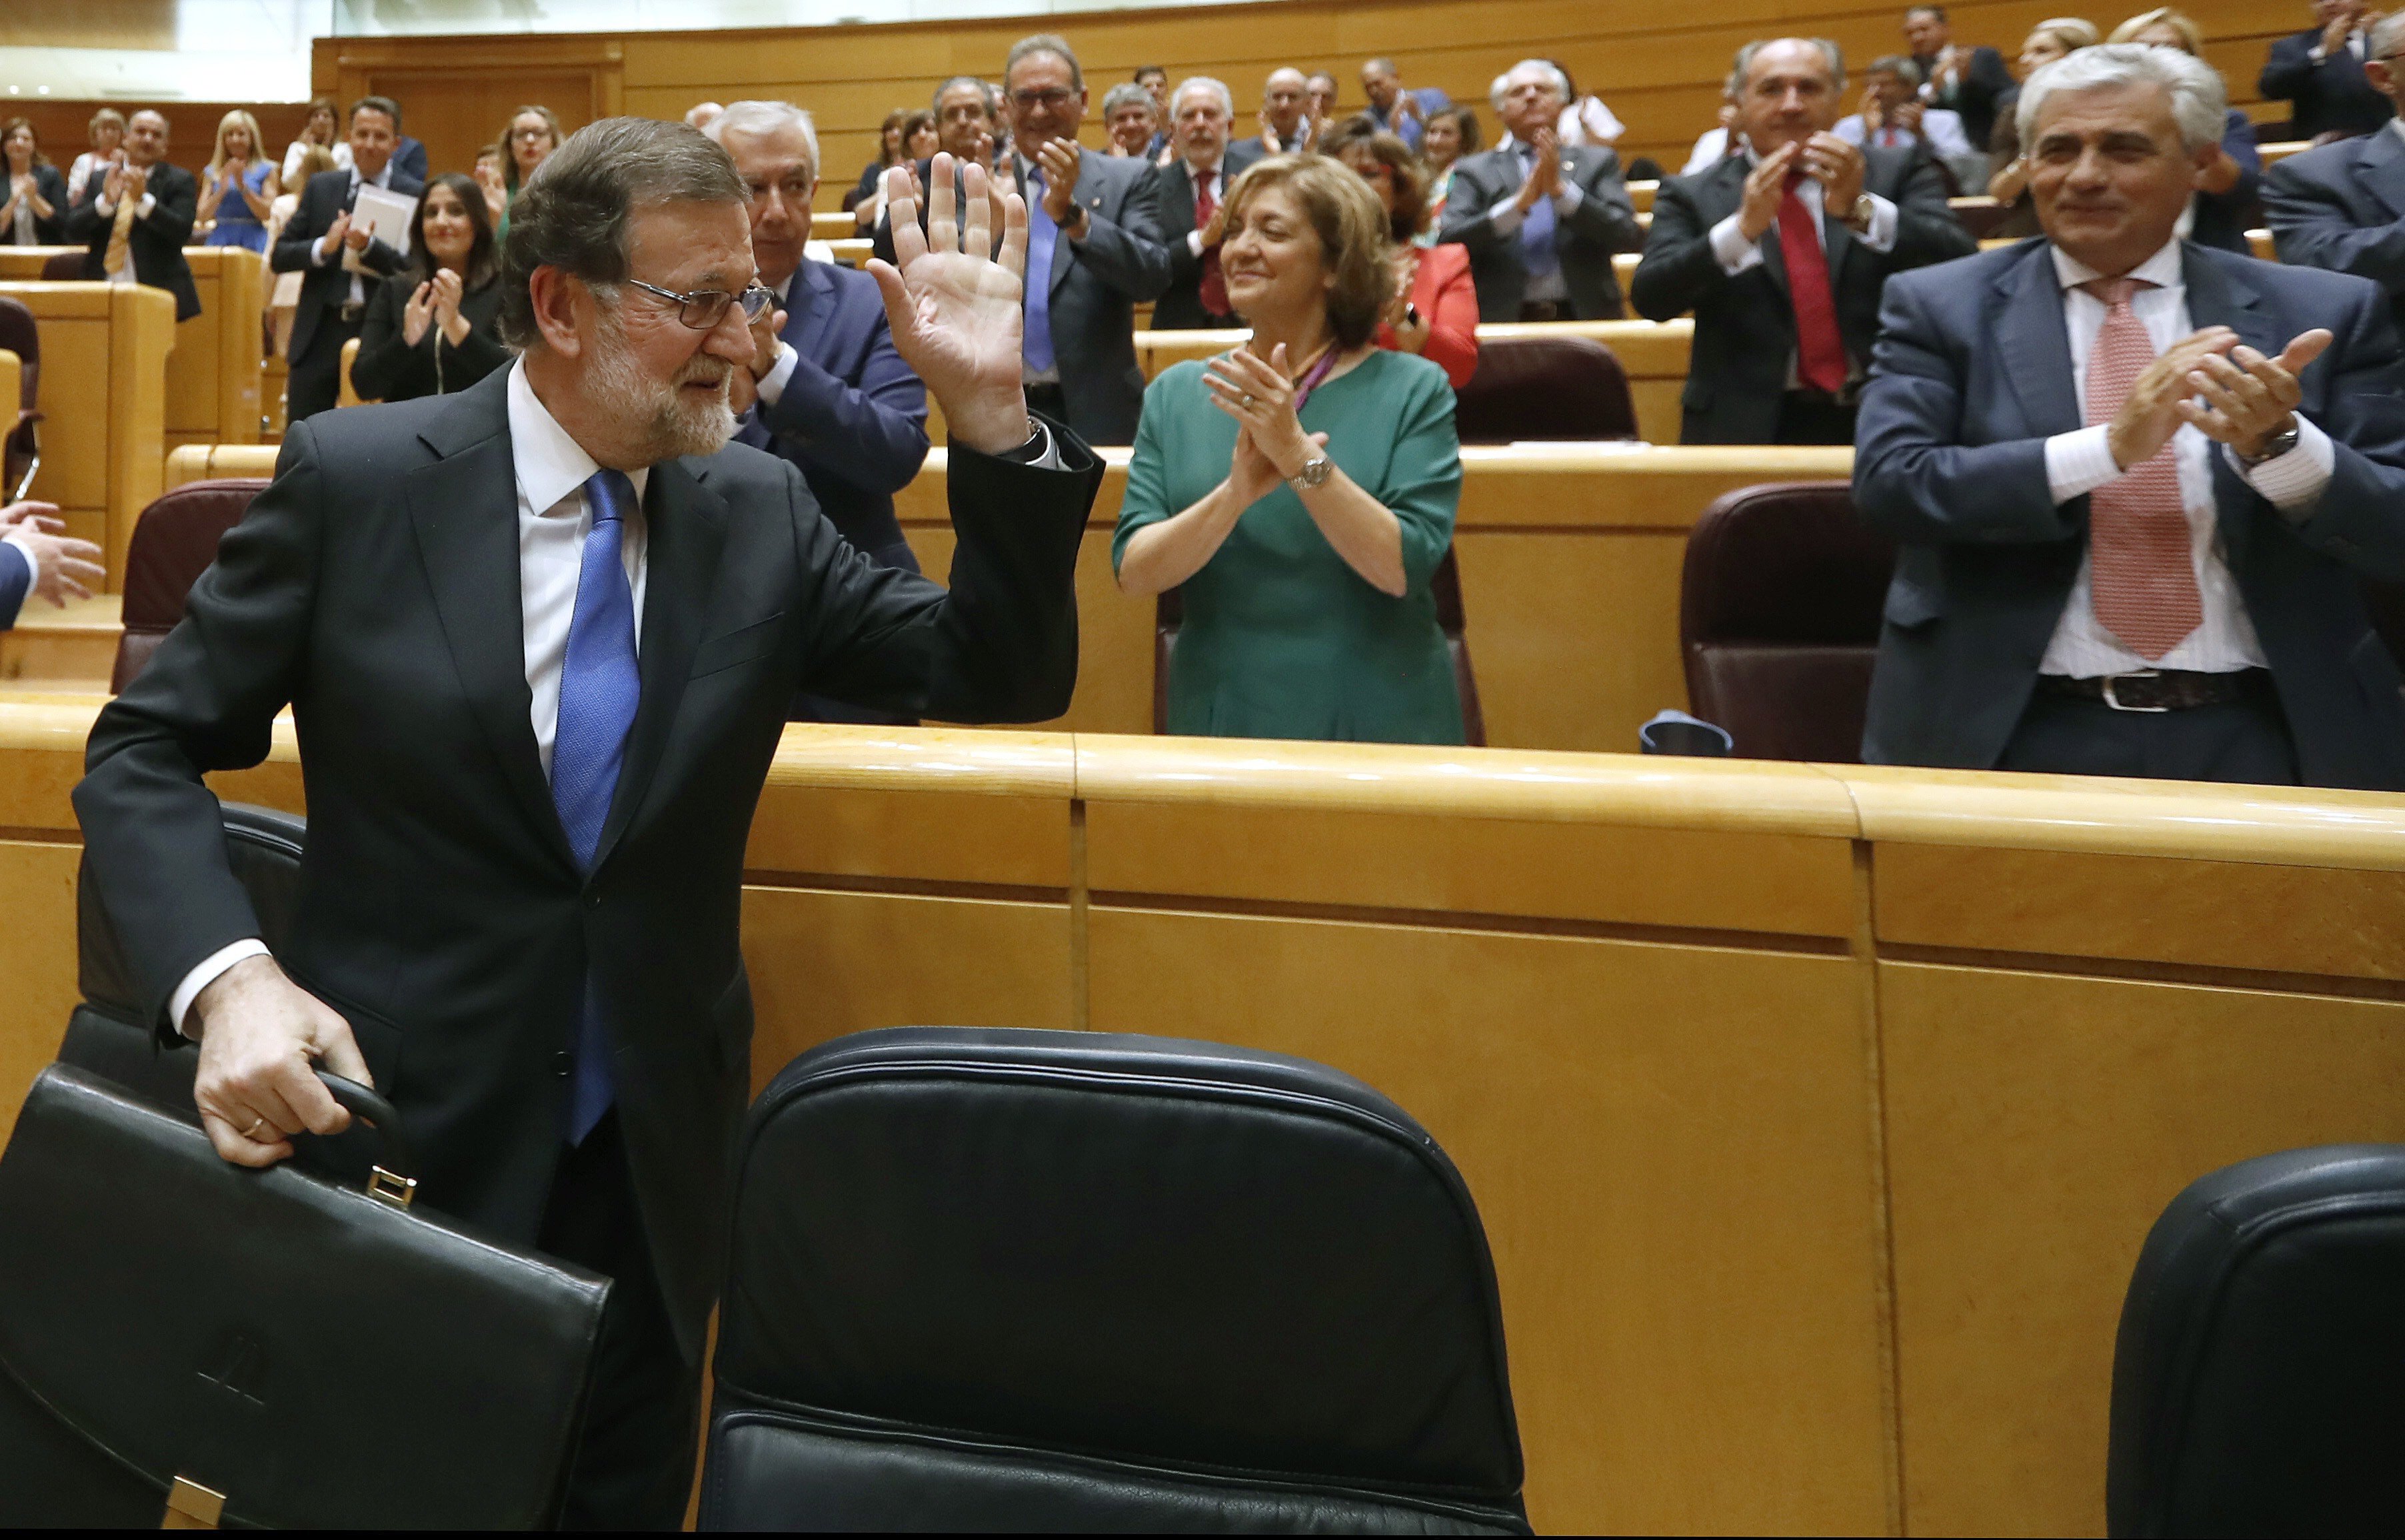 La premsa de Madrid presumeix del discurs antiprocés de Rajoy